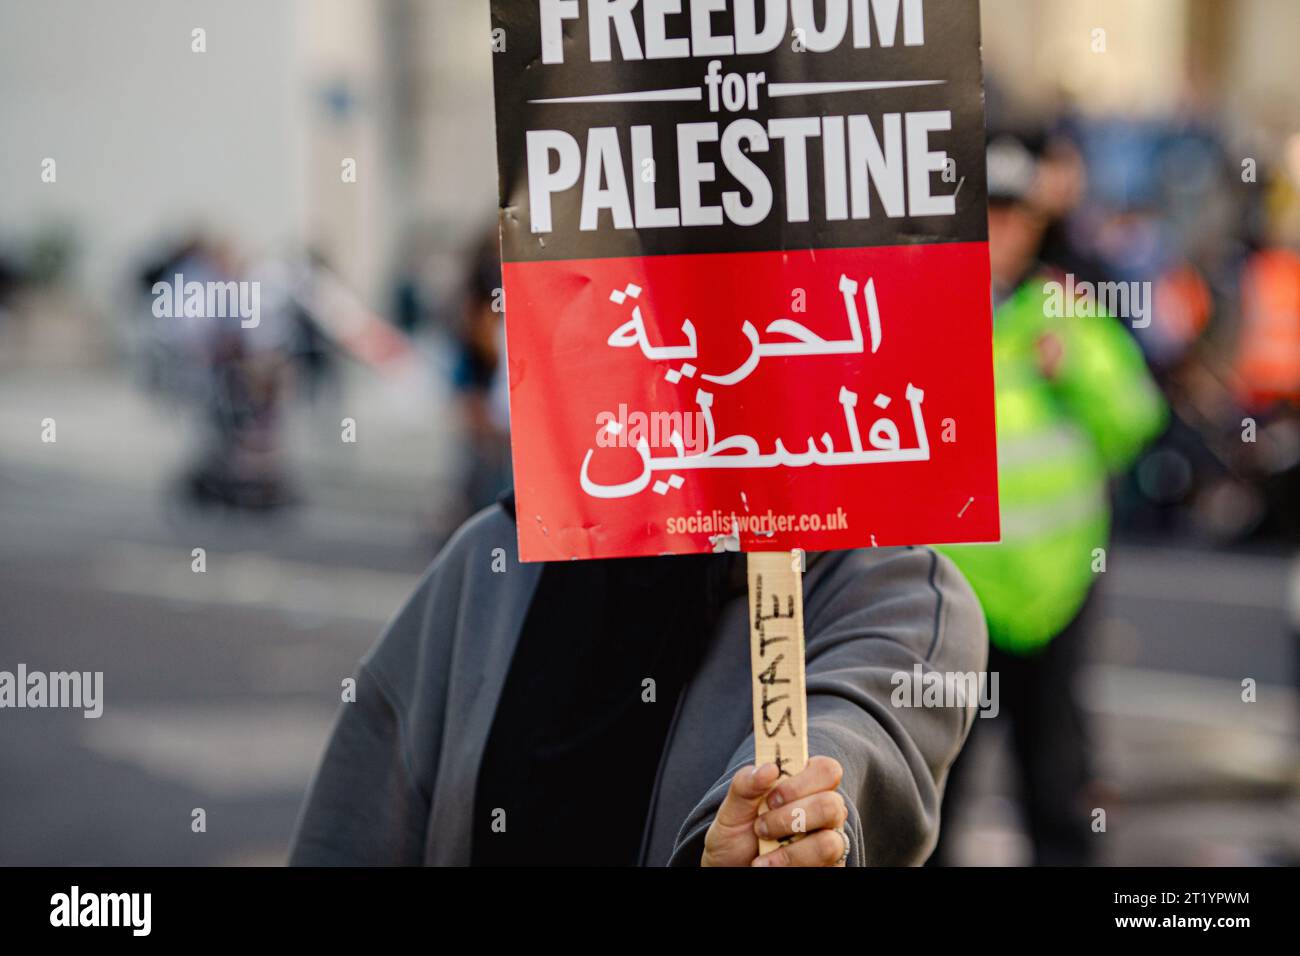 Nicht identifizierte Person, die während des Protests gegen Palästina in London ein Protestzeichen hält. Stockfoto